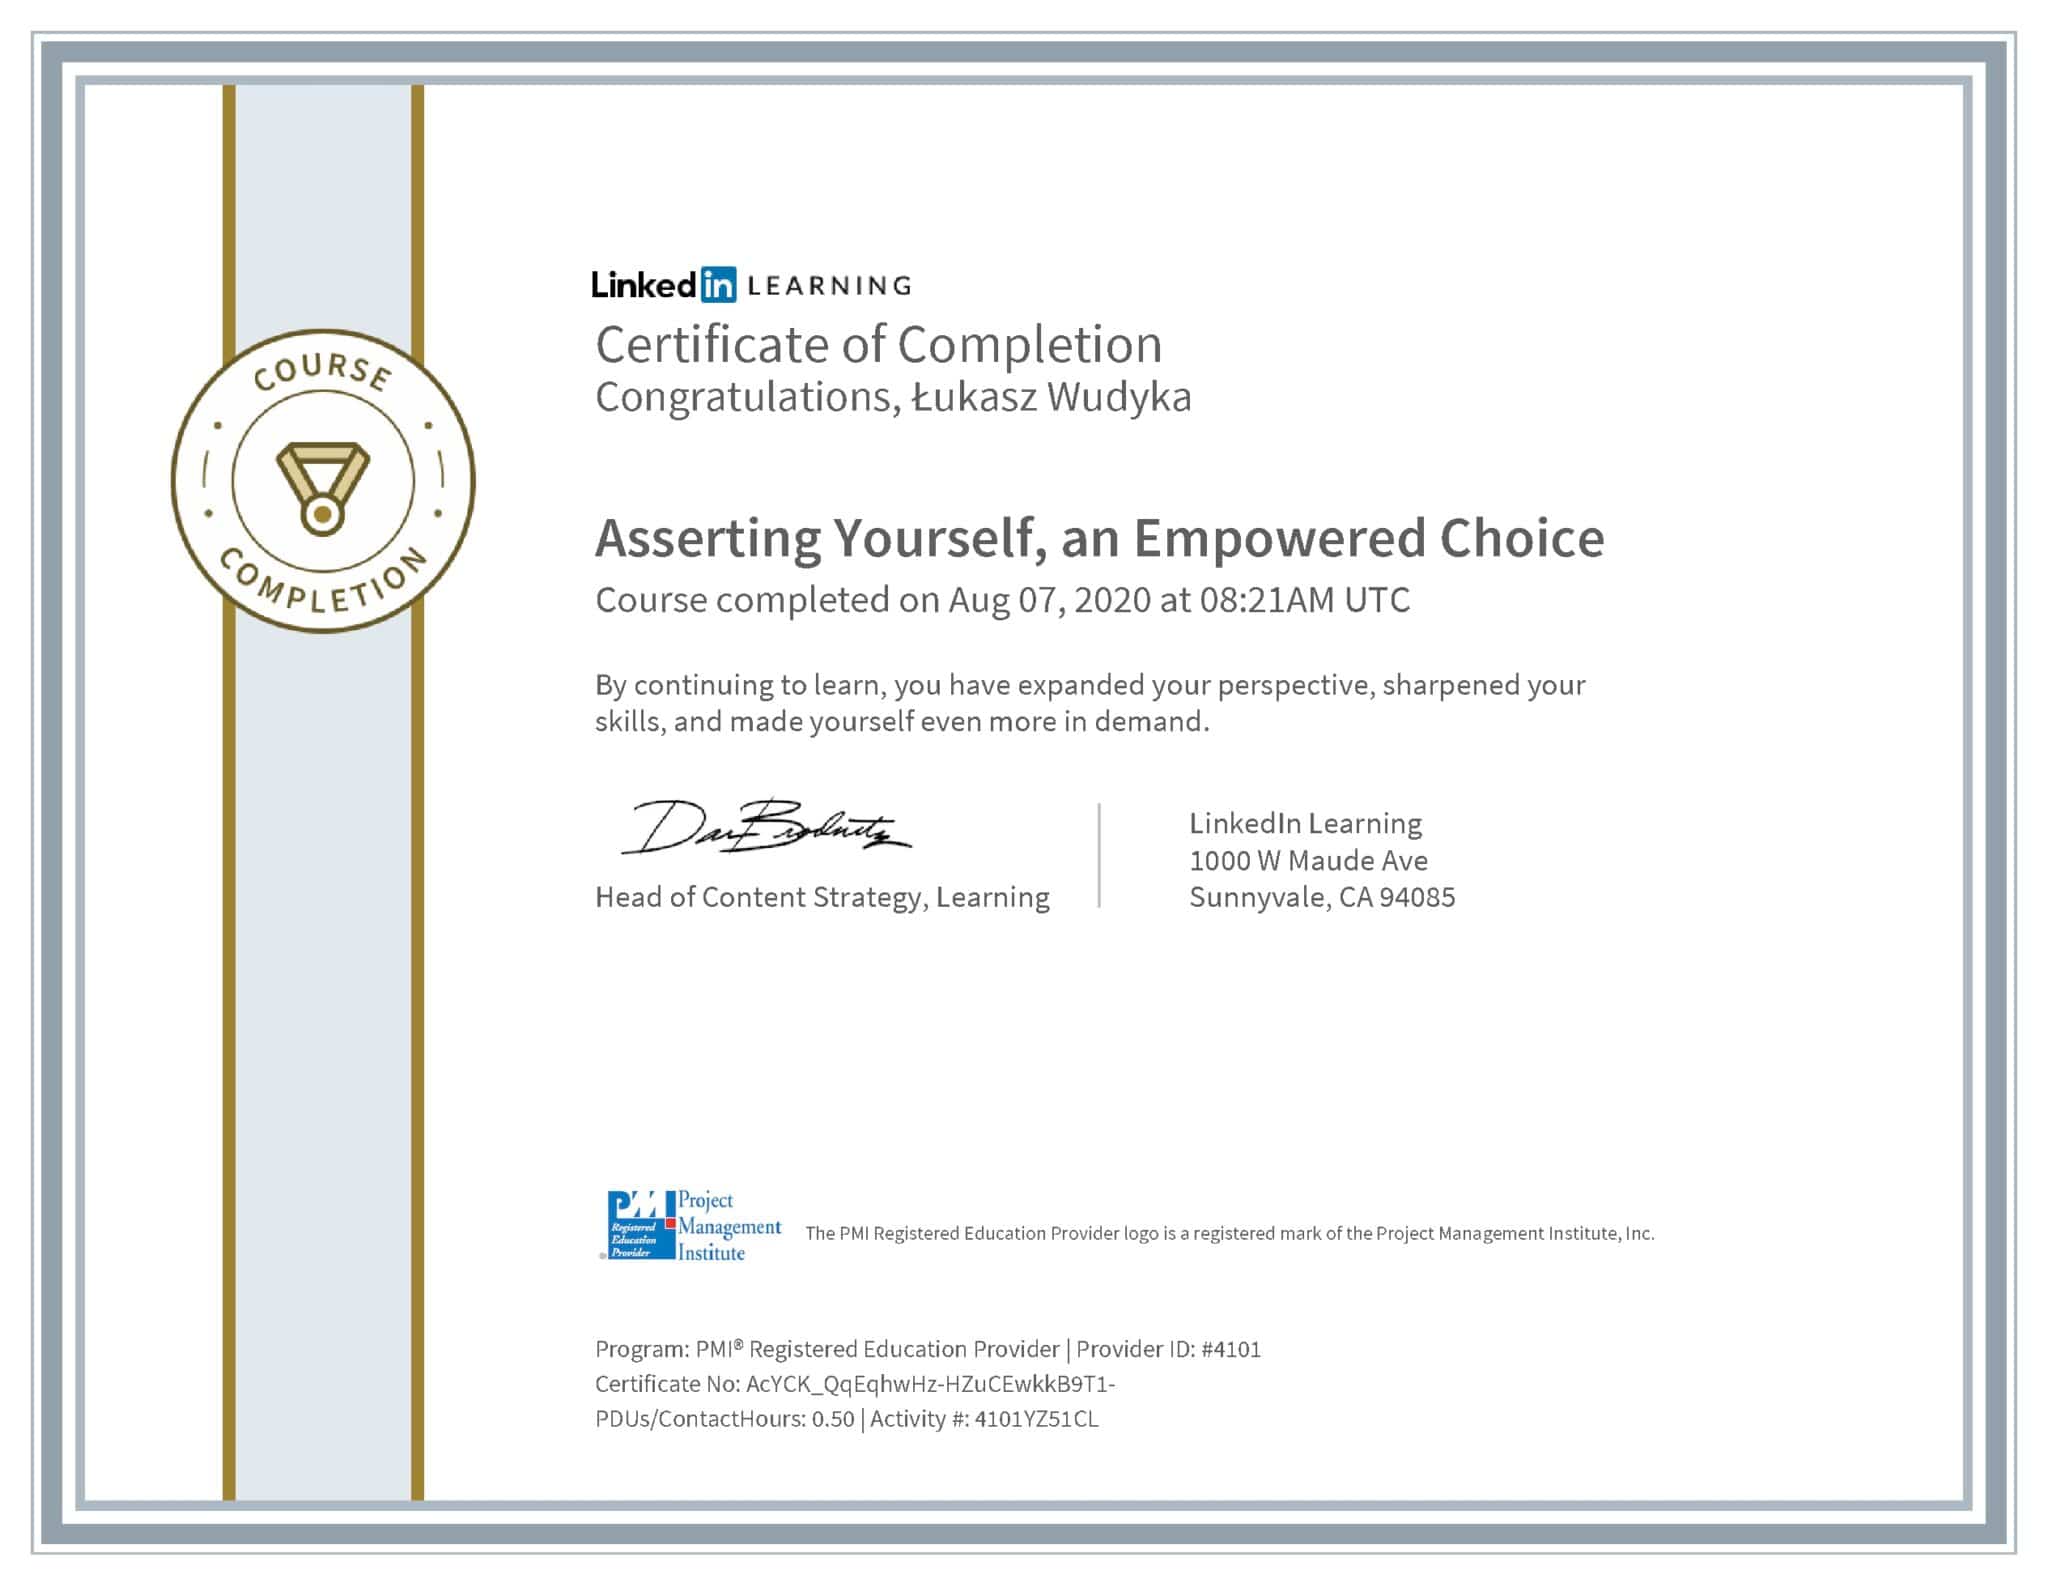 Łukasz Wudyka certyfikat LinkedIn Asserting Yourself, an Empowered Choice PMI